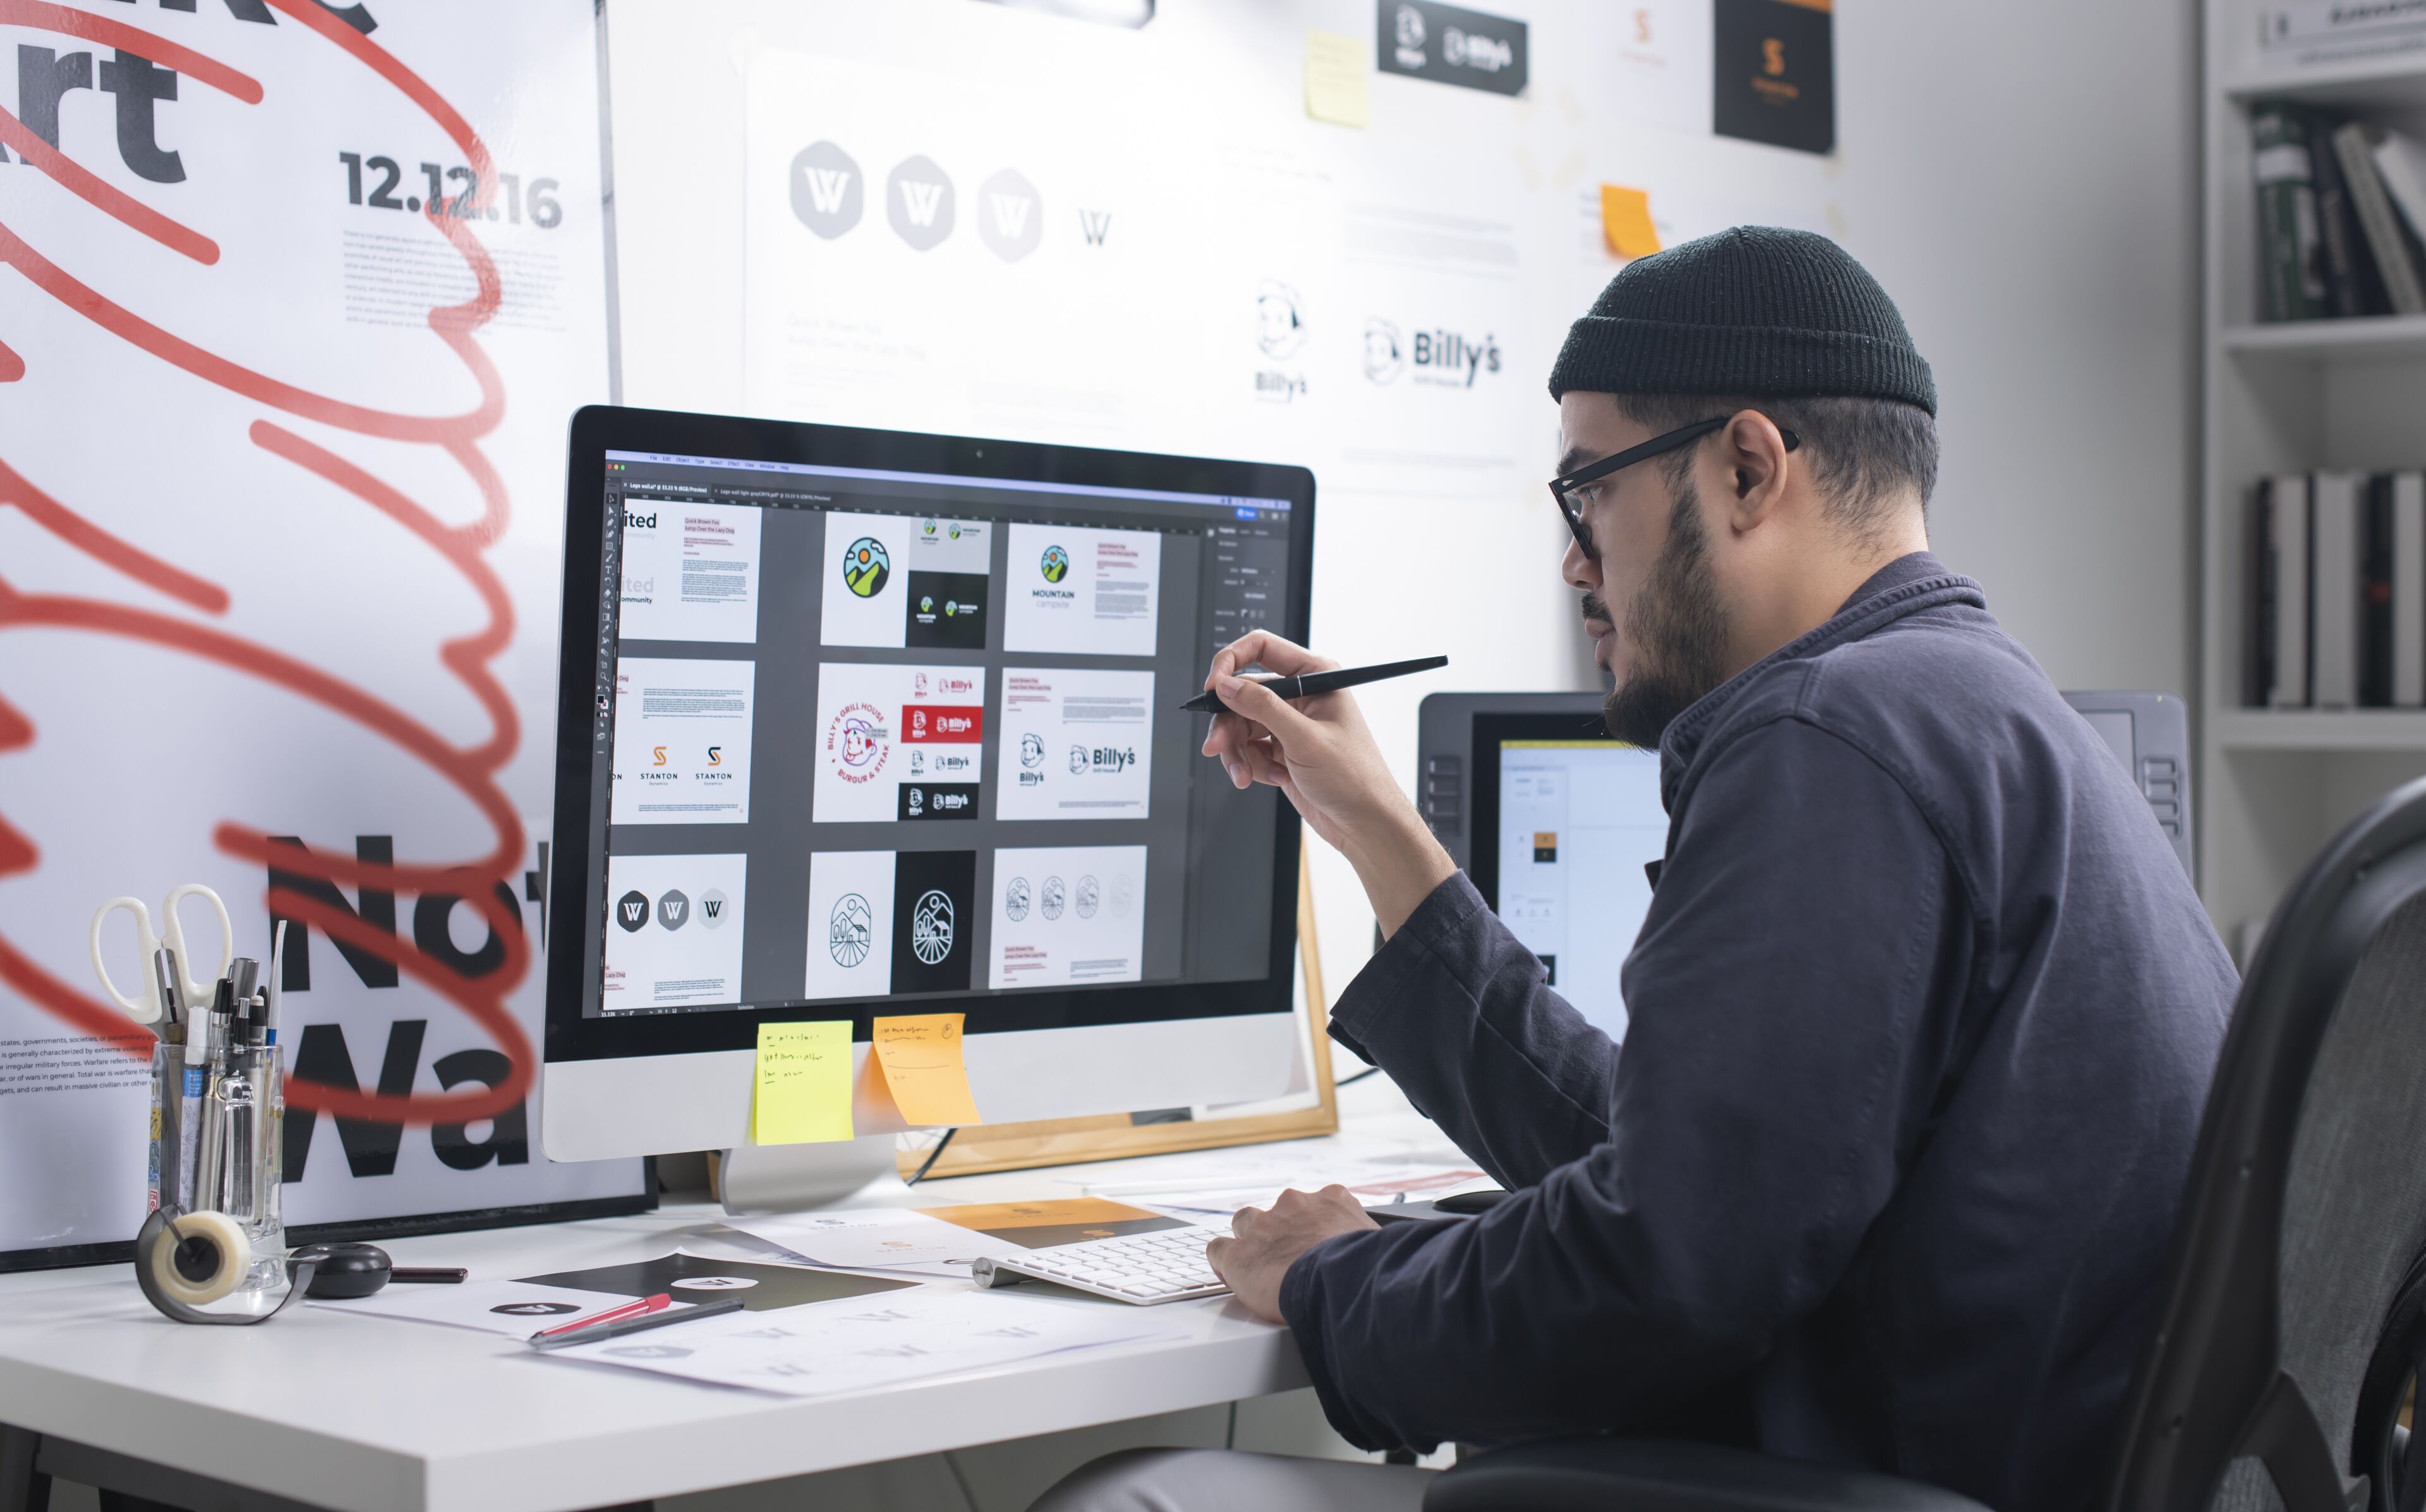 Diseñador gráfico masculino con gorro revisa diseños en un monitor grande, con un lápiz óptico, en un espacio de trabajo ordenado.